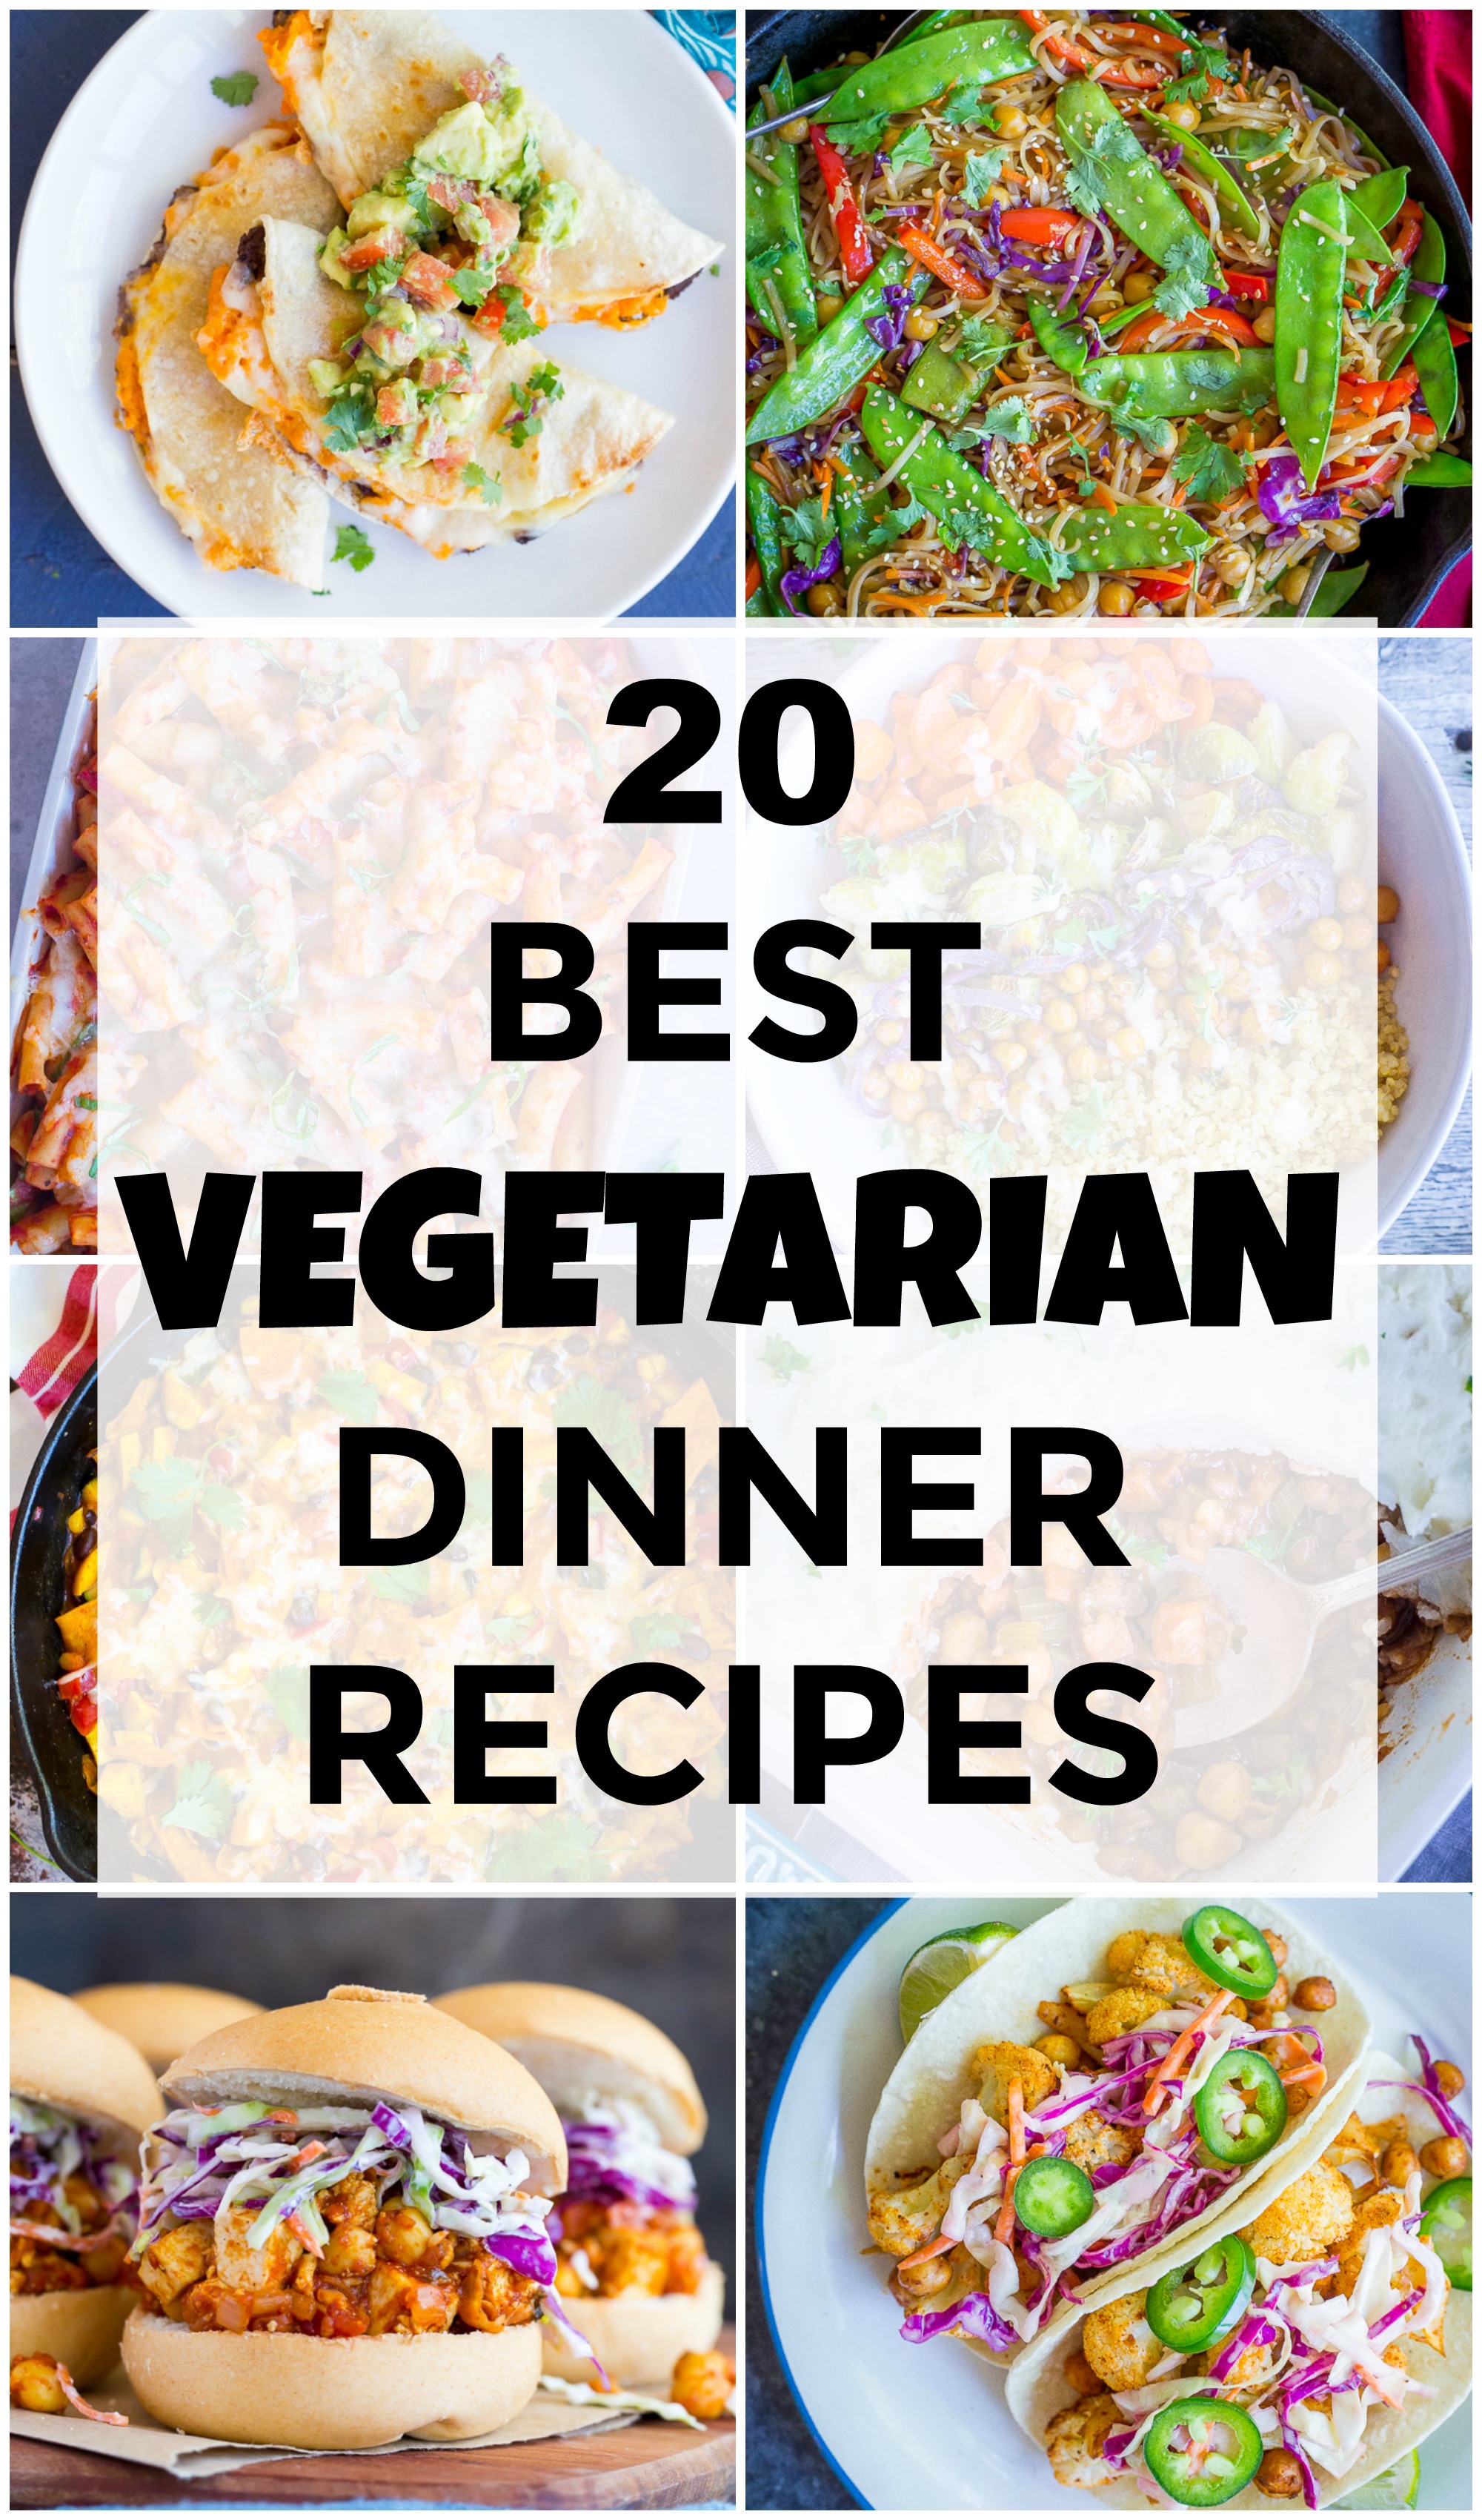 Best Easy Vegetarian Recipes For Dinner | Vegetarian Recipes